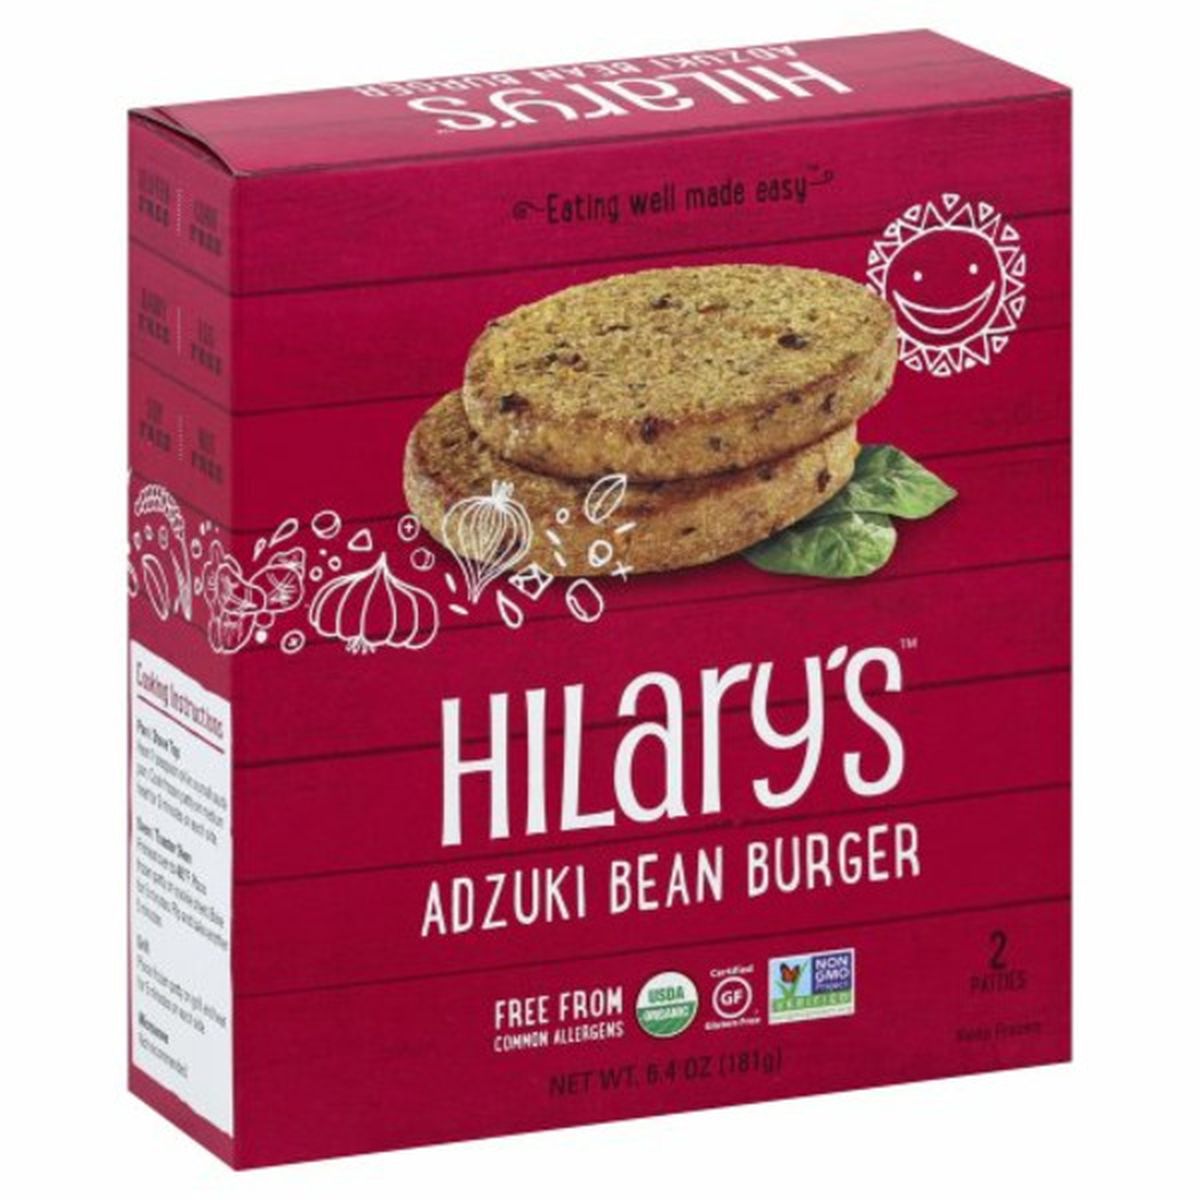 Calories in Hilary's Burger, Adzuki Bean